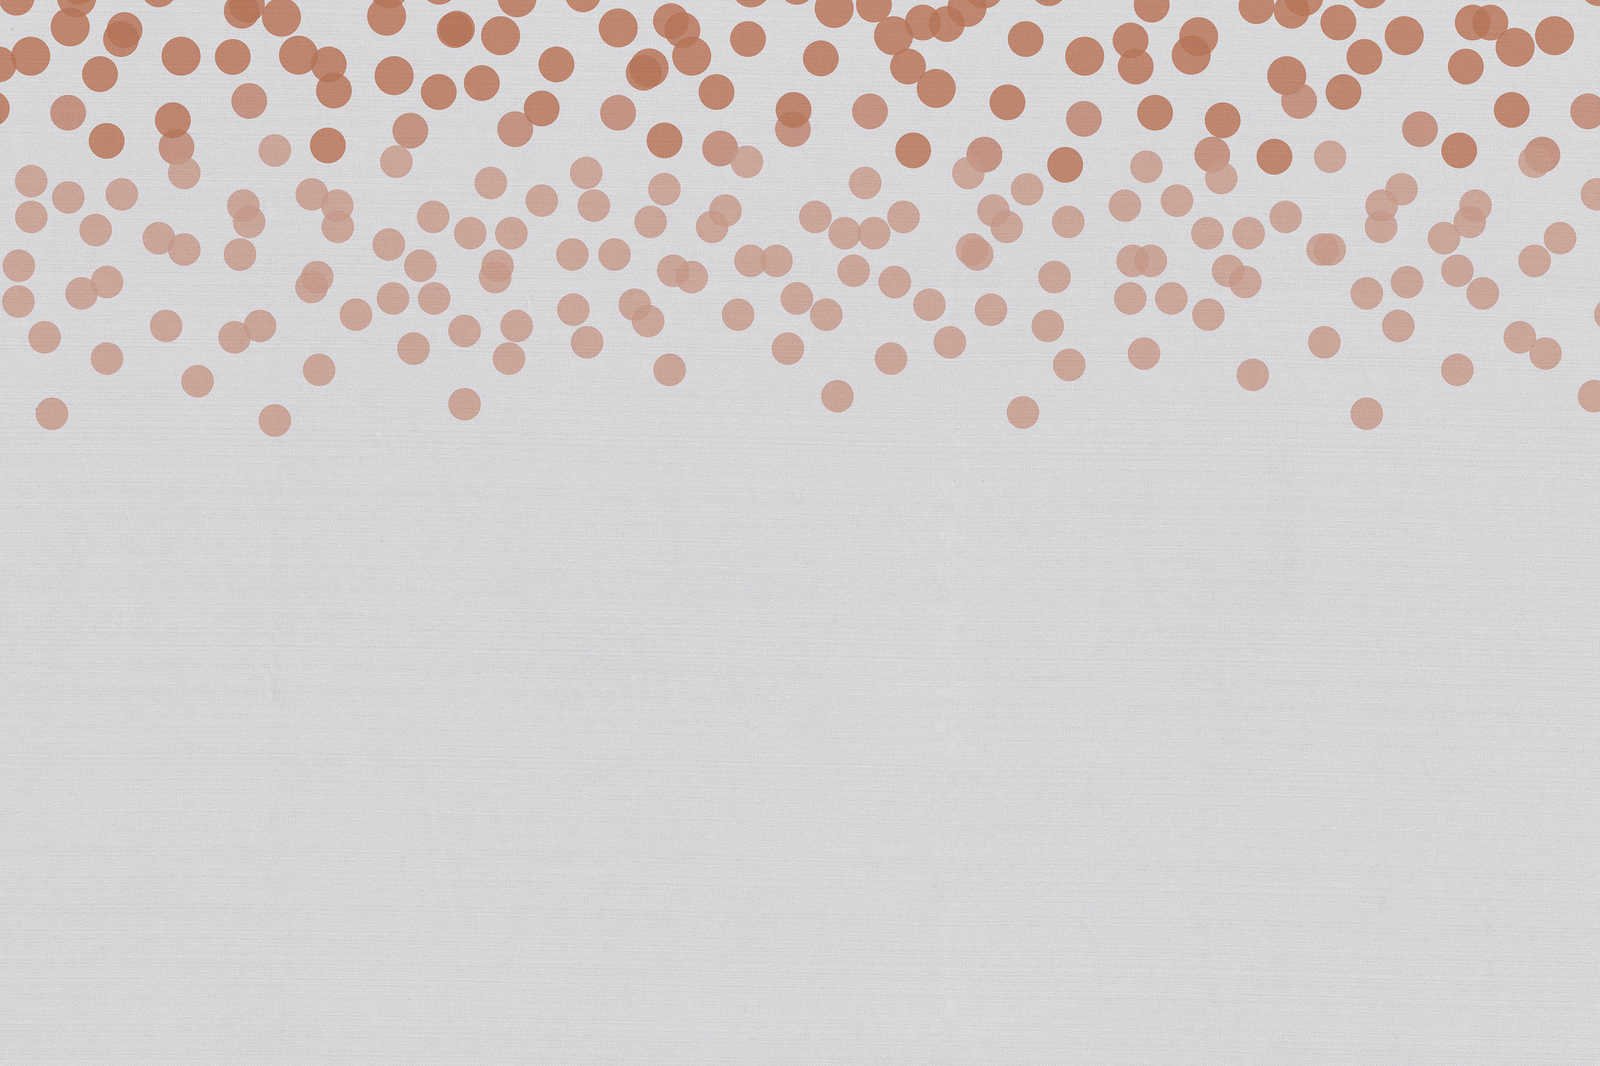             Leinwandbild mit dezenten Punkt-Muster | rot, grau – 0,90 m x 0,60 m
        